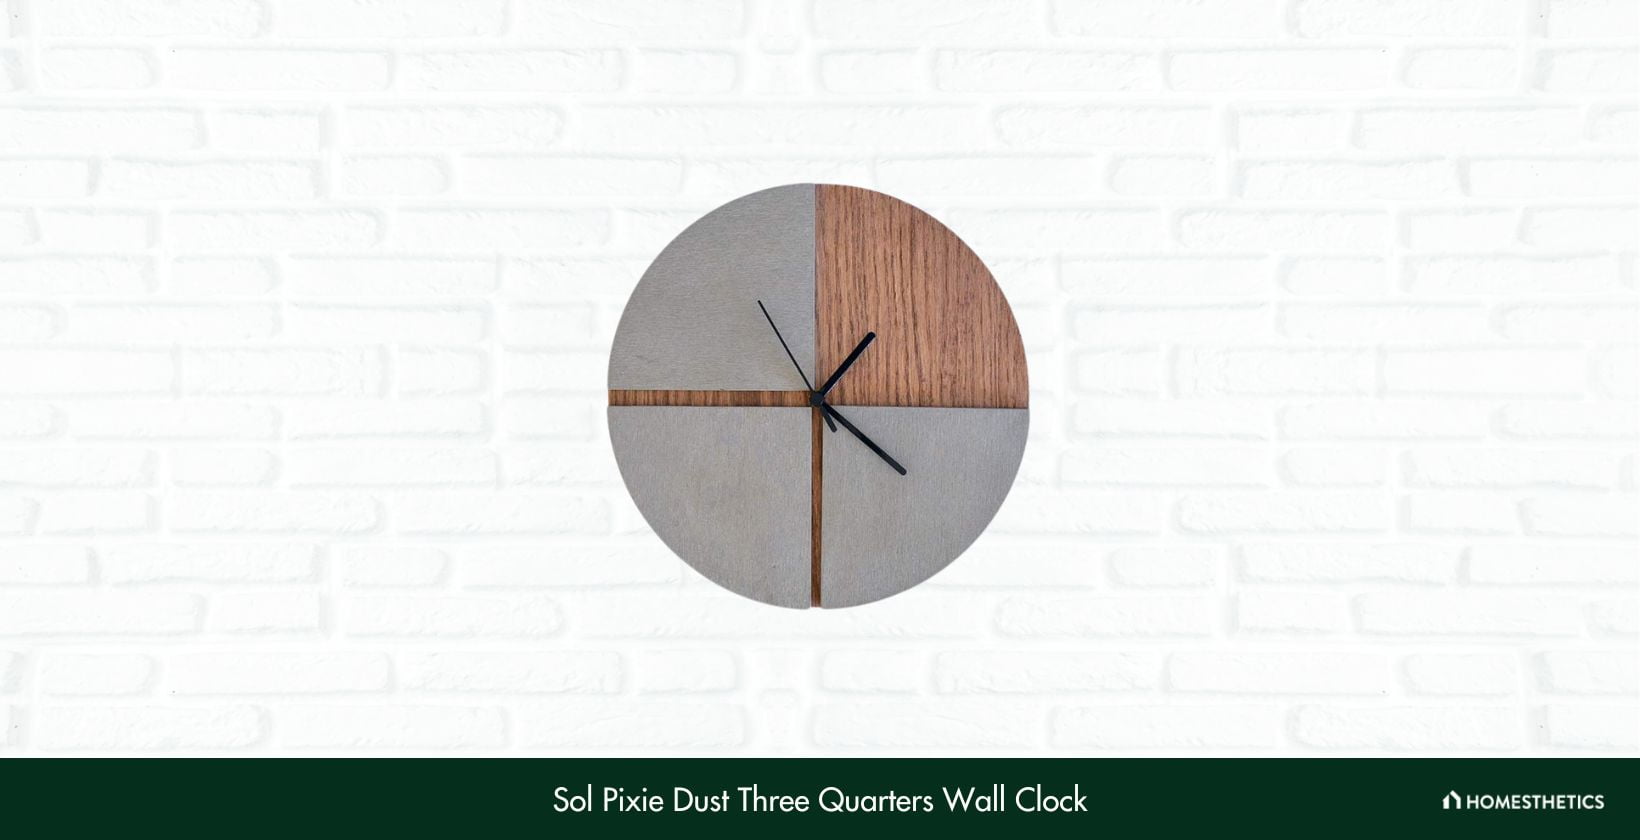 Sol Pixie Dust Three Quarters Wall Clock